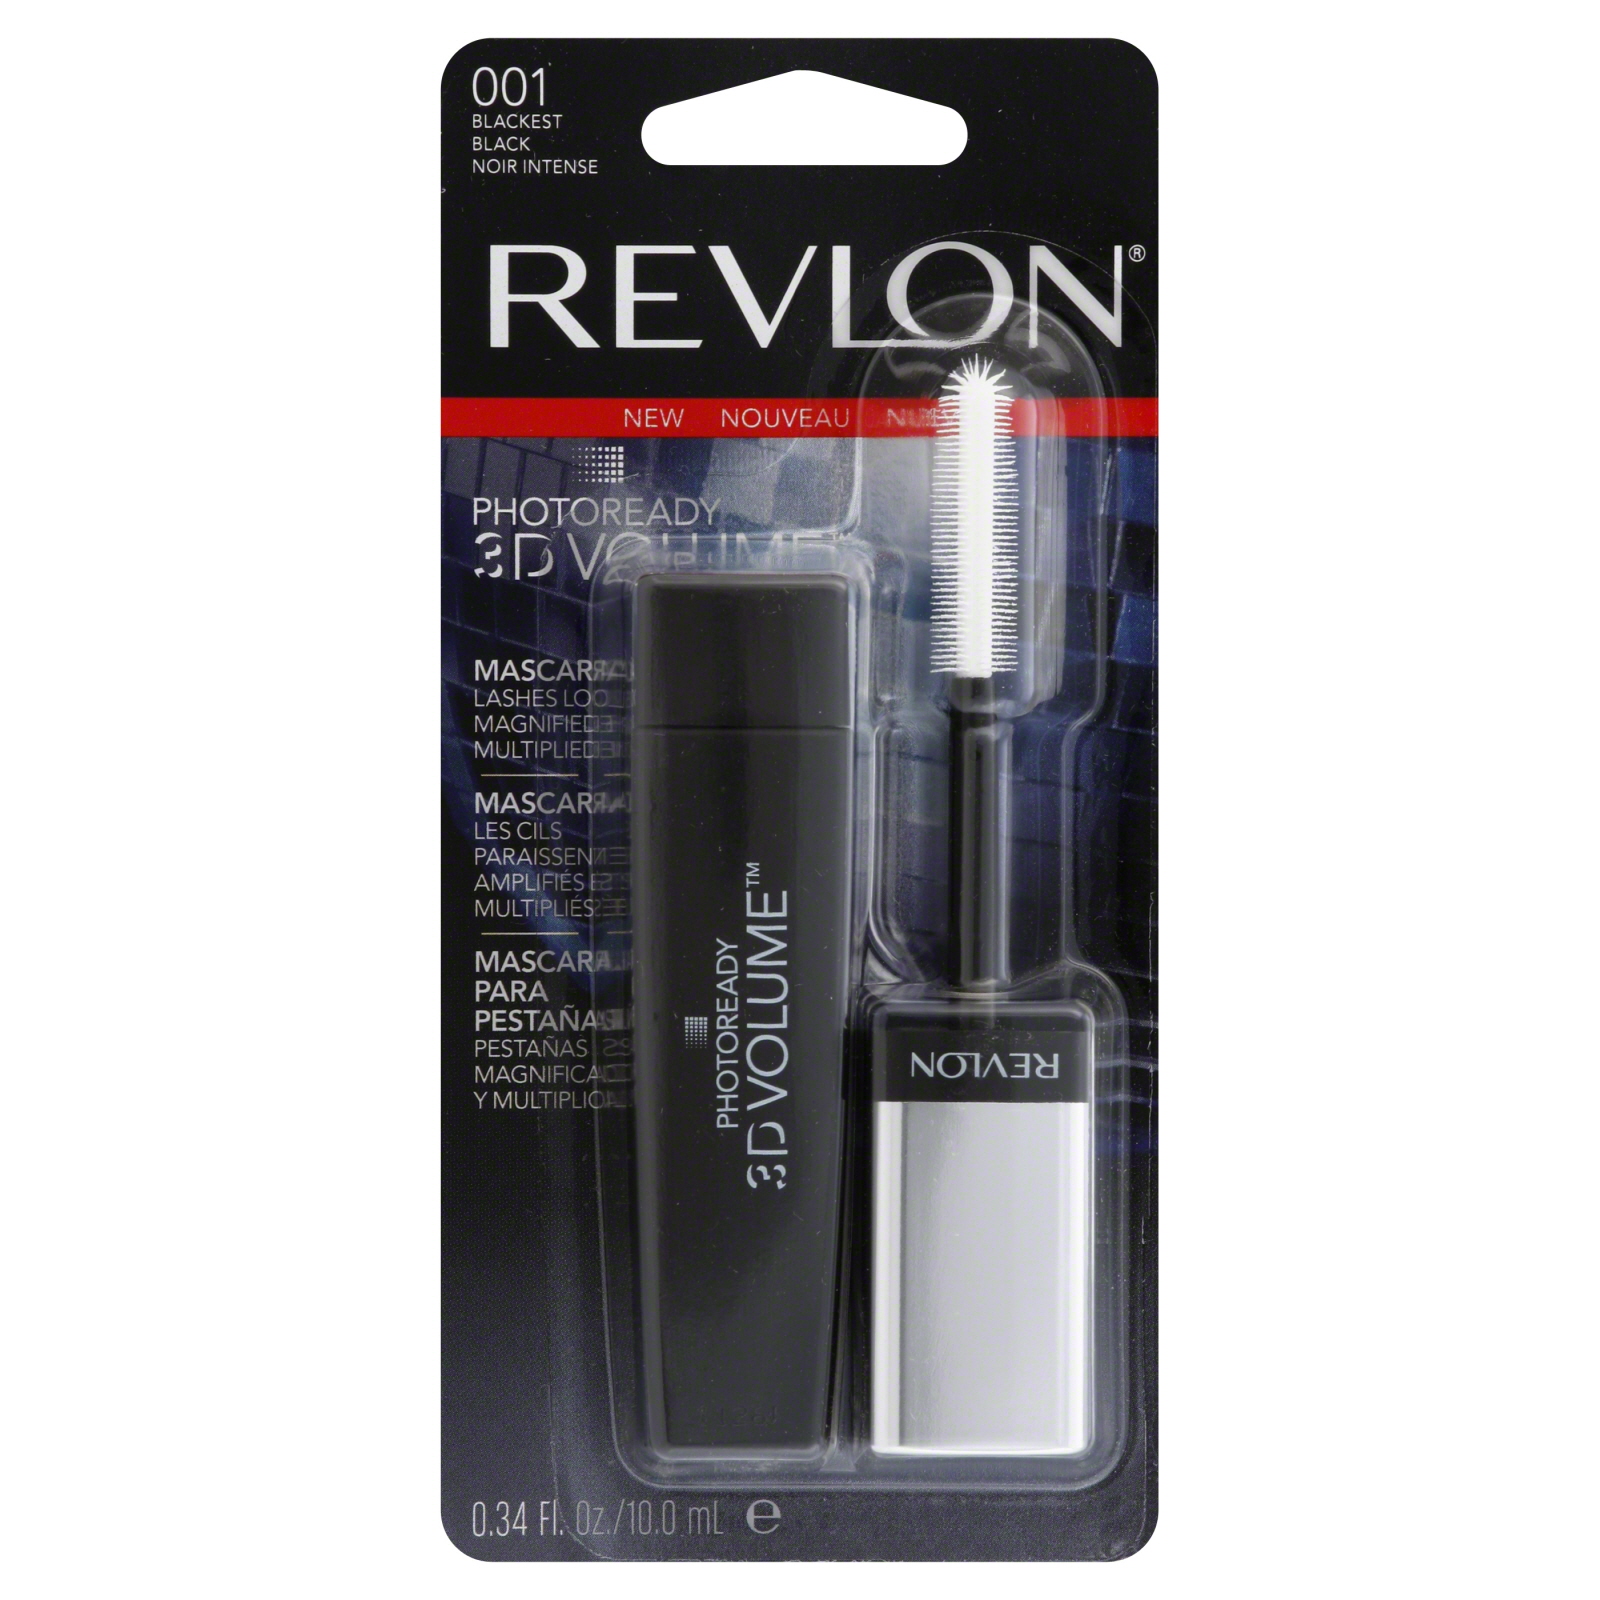 Revlon Photoready 3D Volume Mascara Blackest Black 0.34 fl oz